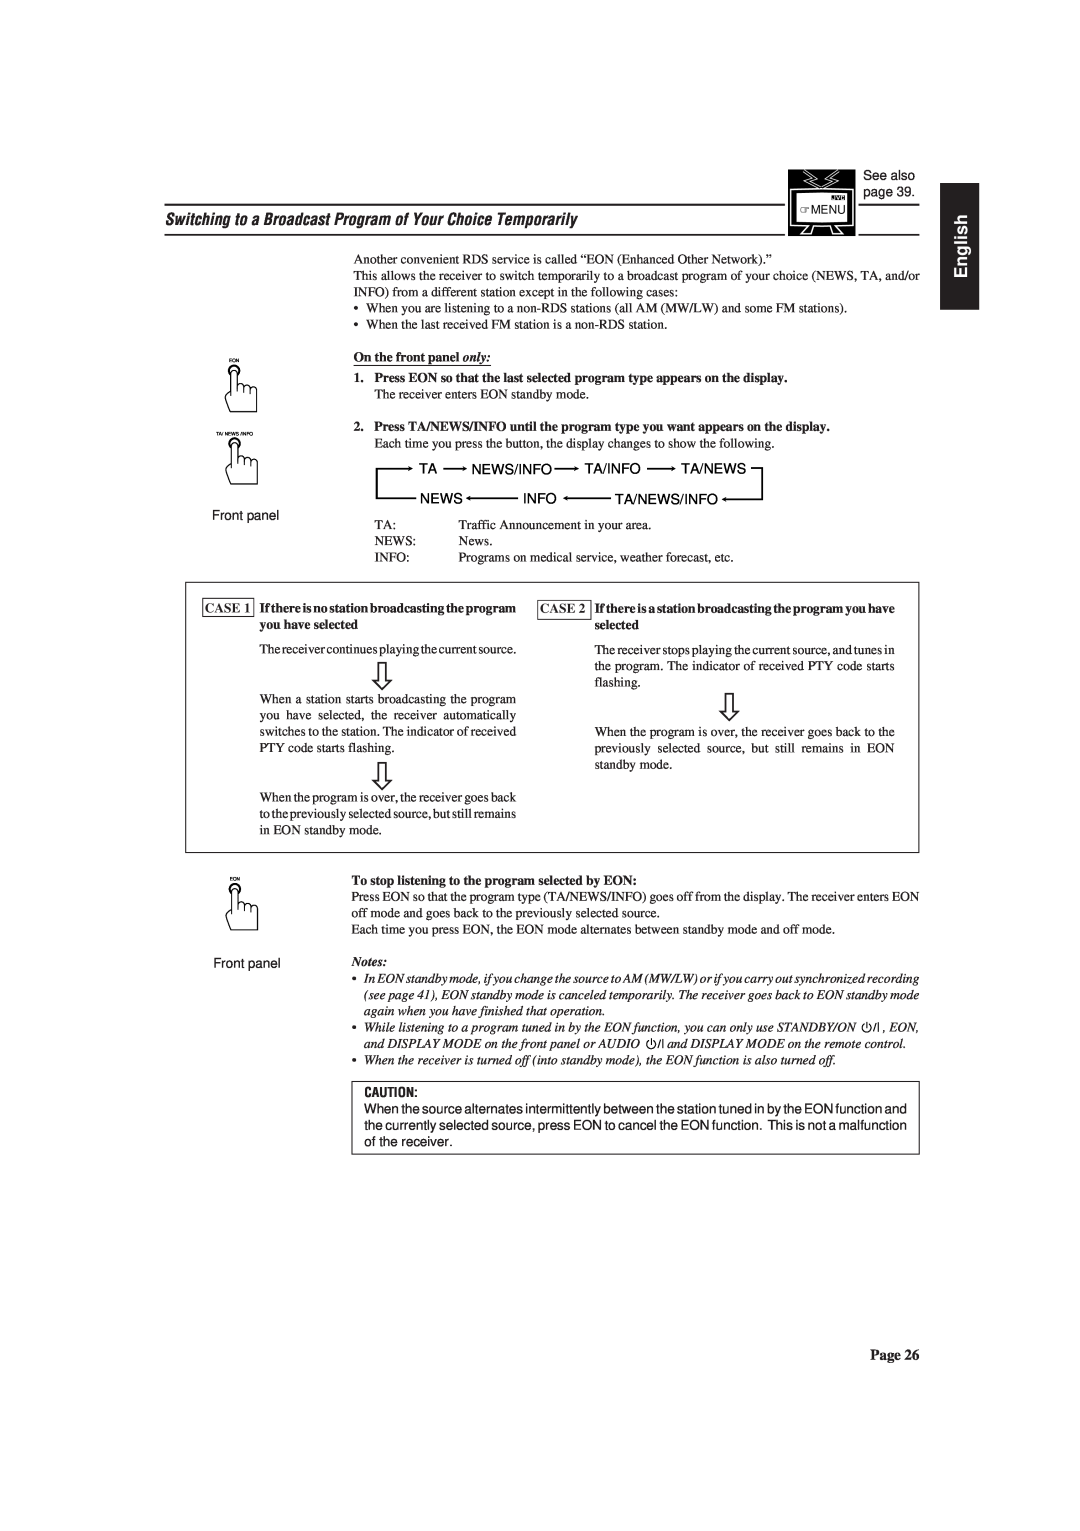 JVC RX-730RBK manual Ta News/Info Ta/Info Ta/News, Ta/News/Info, English 